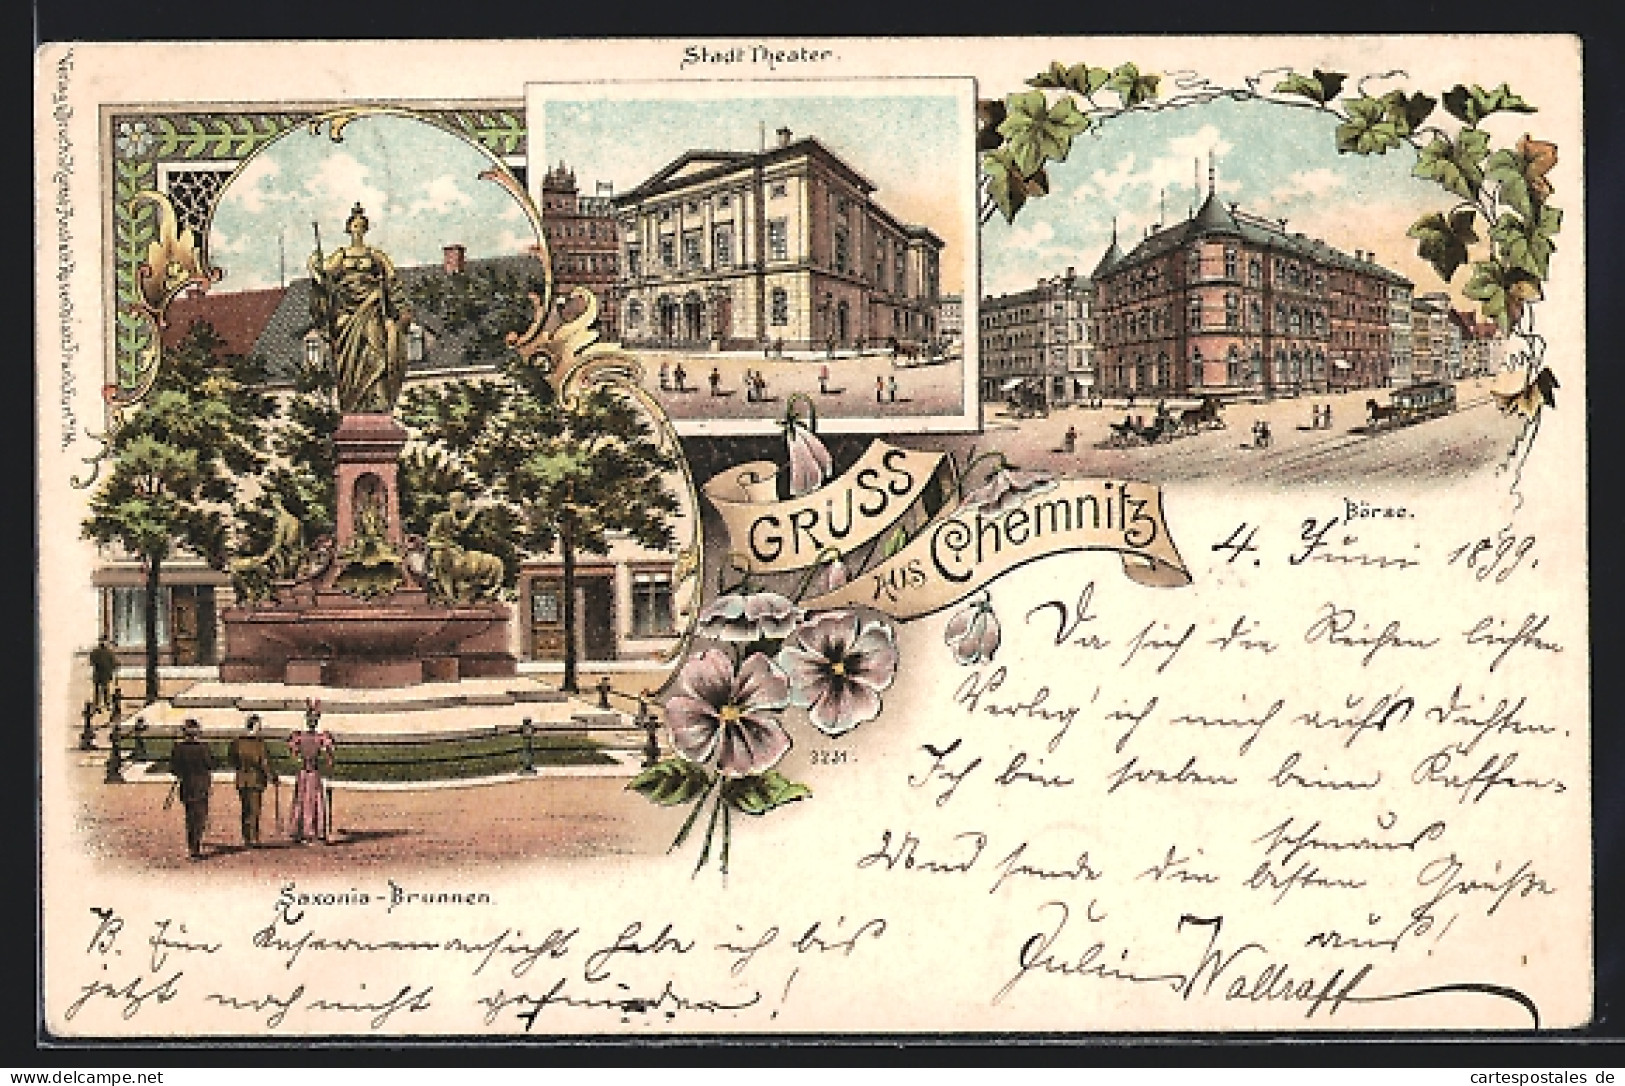 Lithographie Chemnitz, Saxonia-Brunnen, Stadt-Theater, Börse  - Theatre